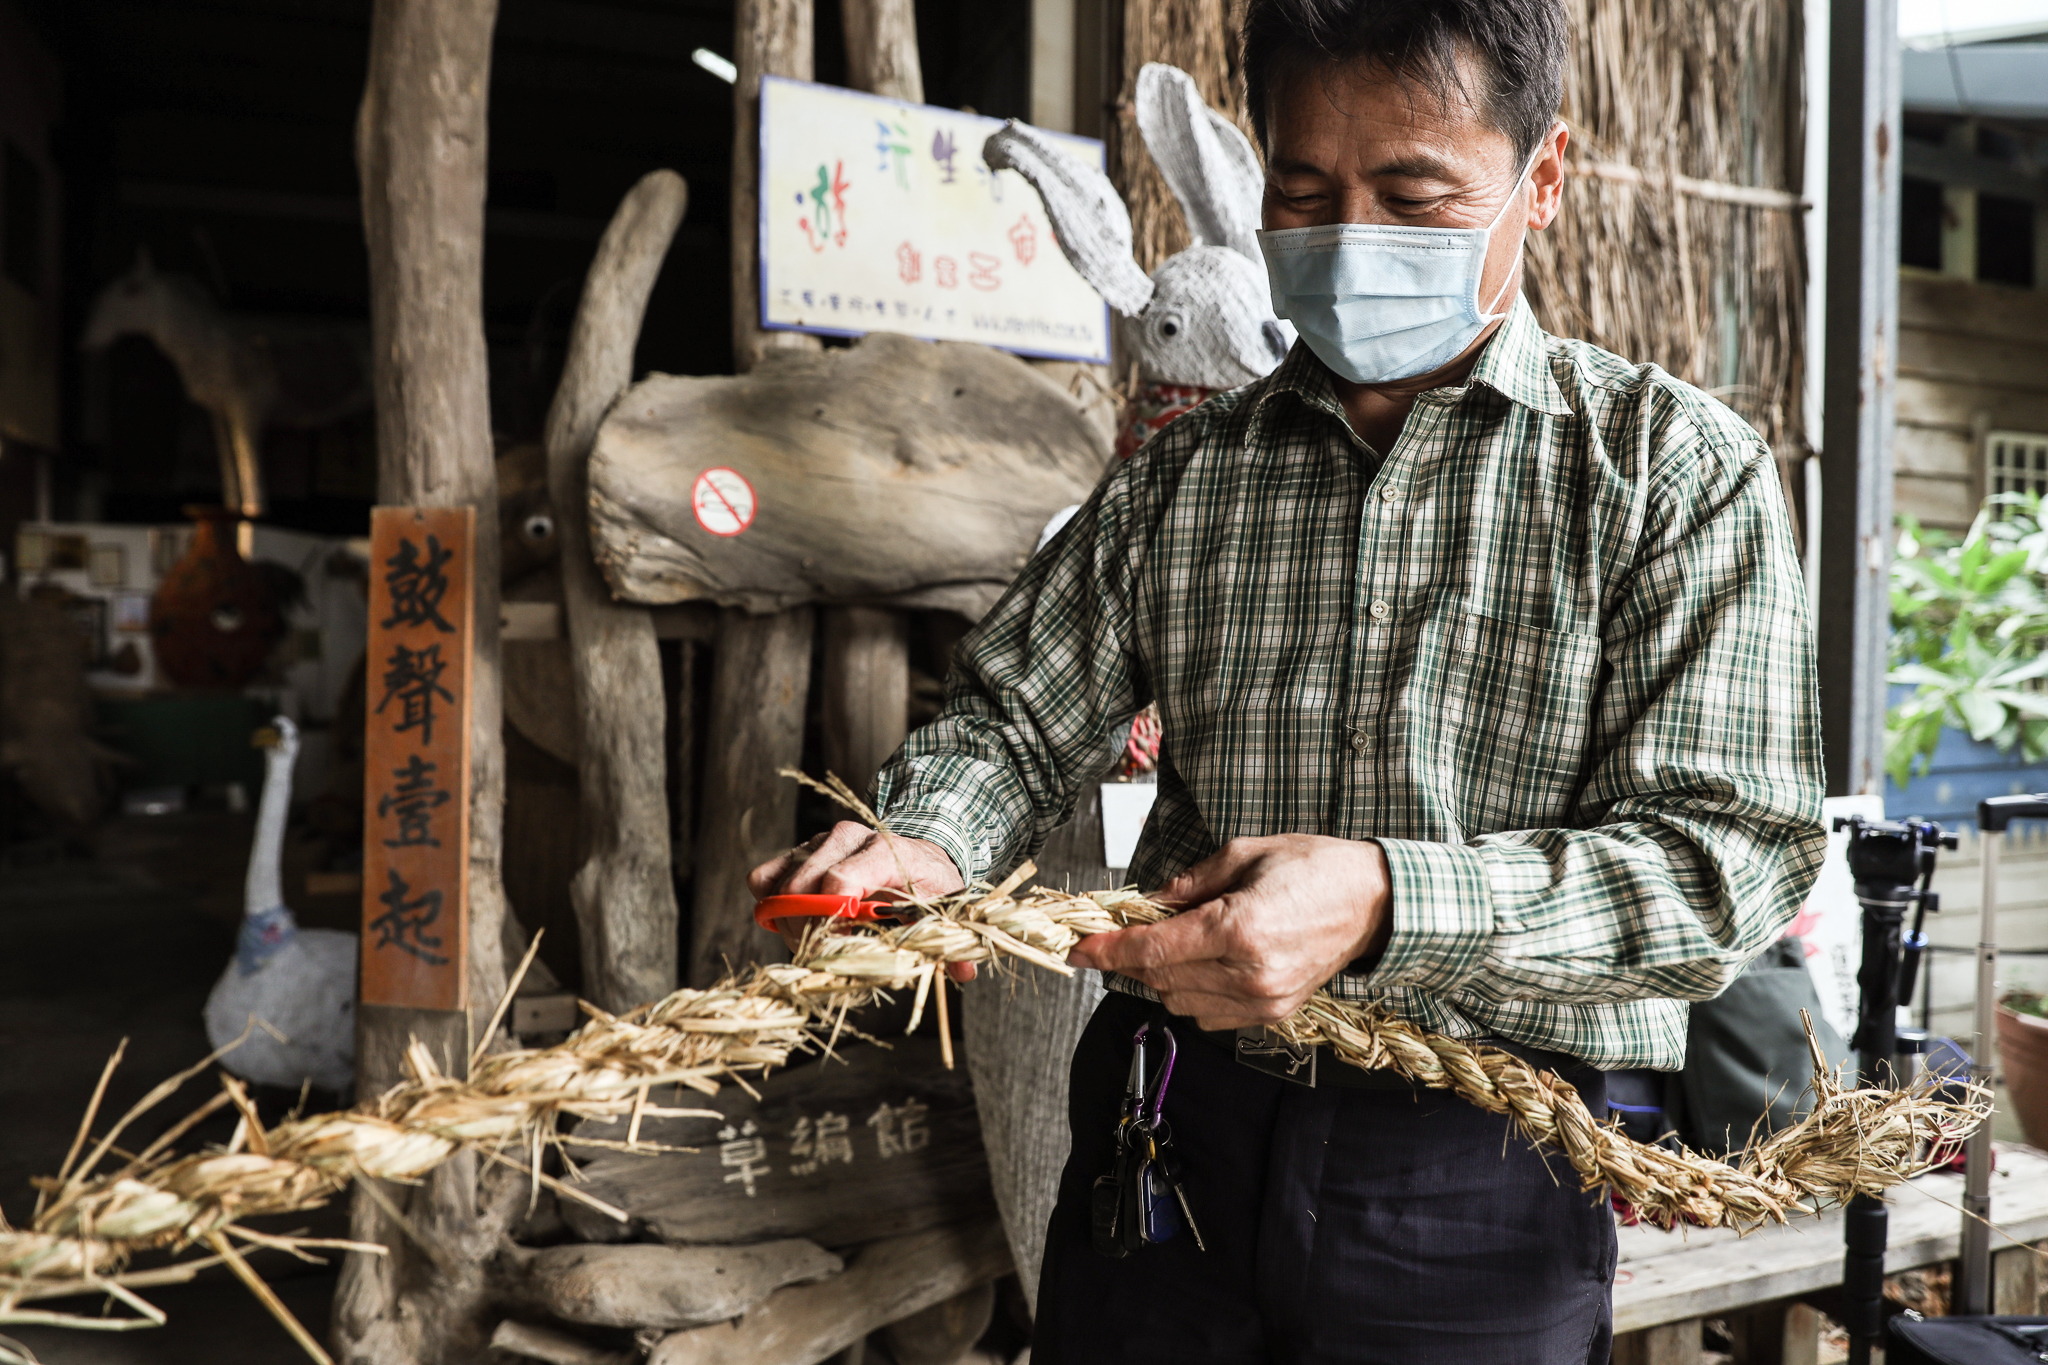 濕地稻草編織草繩作為創作媒材